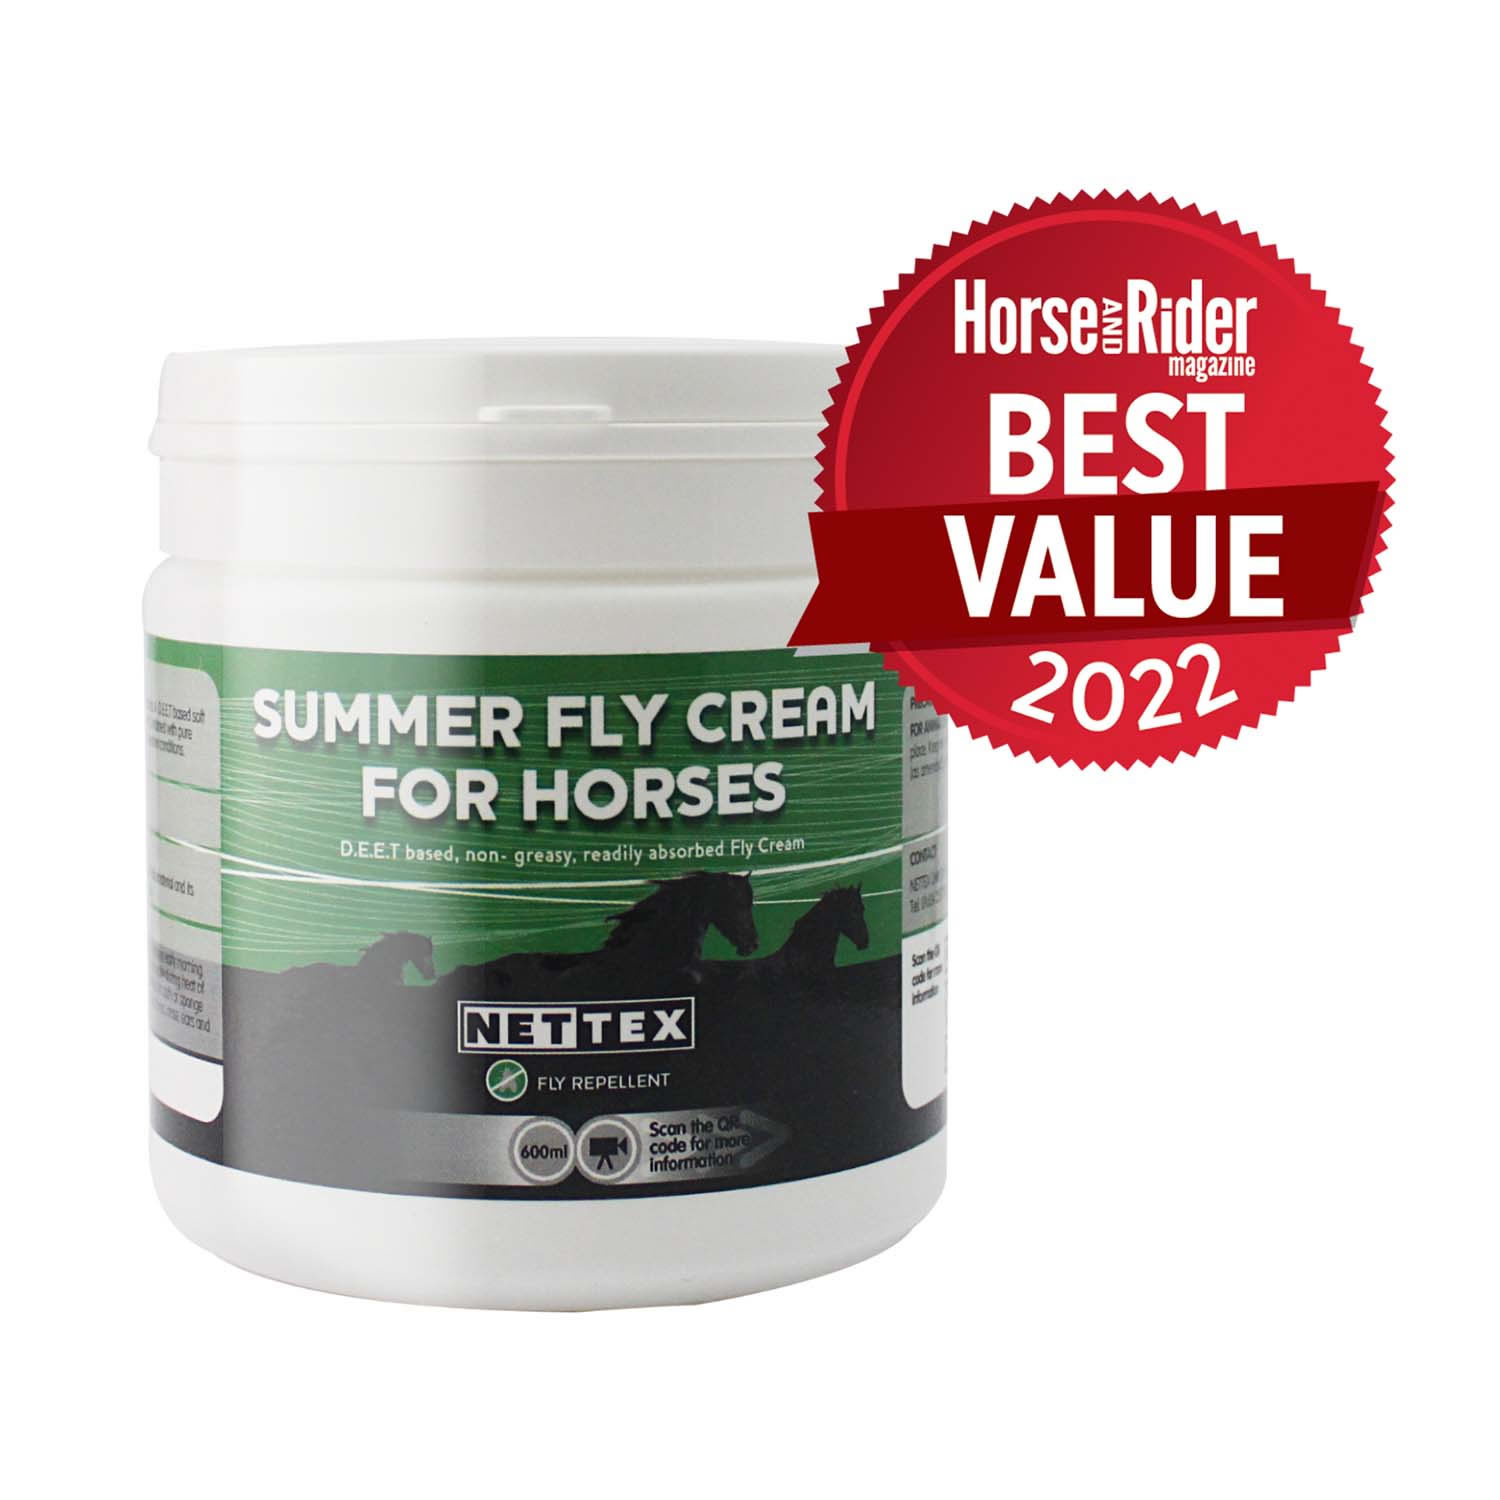 Nettex Summer Fly Cream for Horses